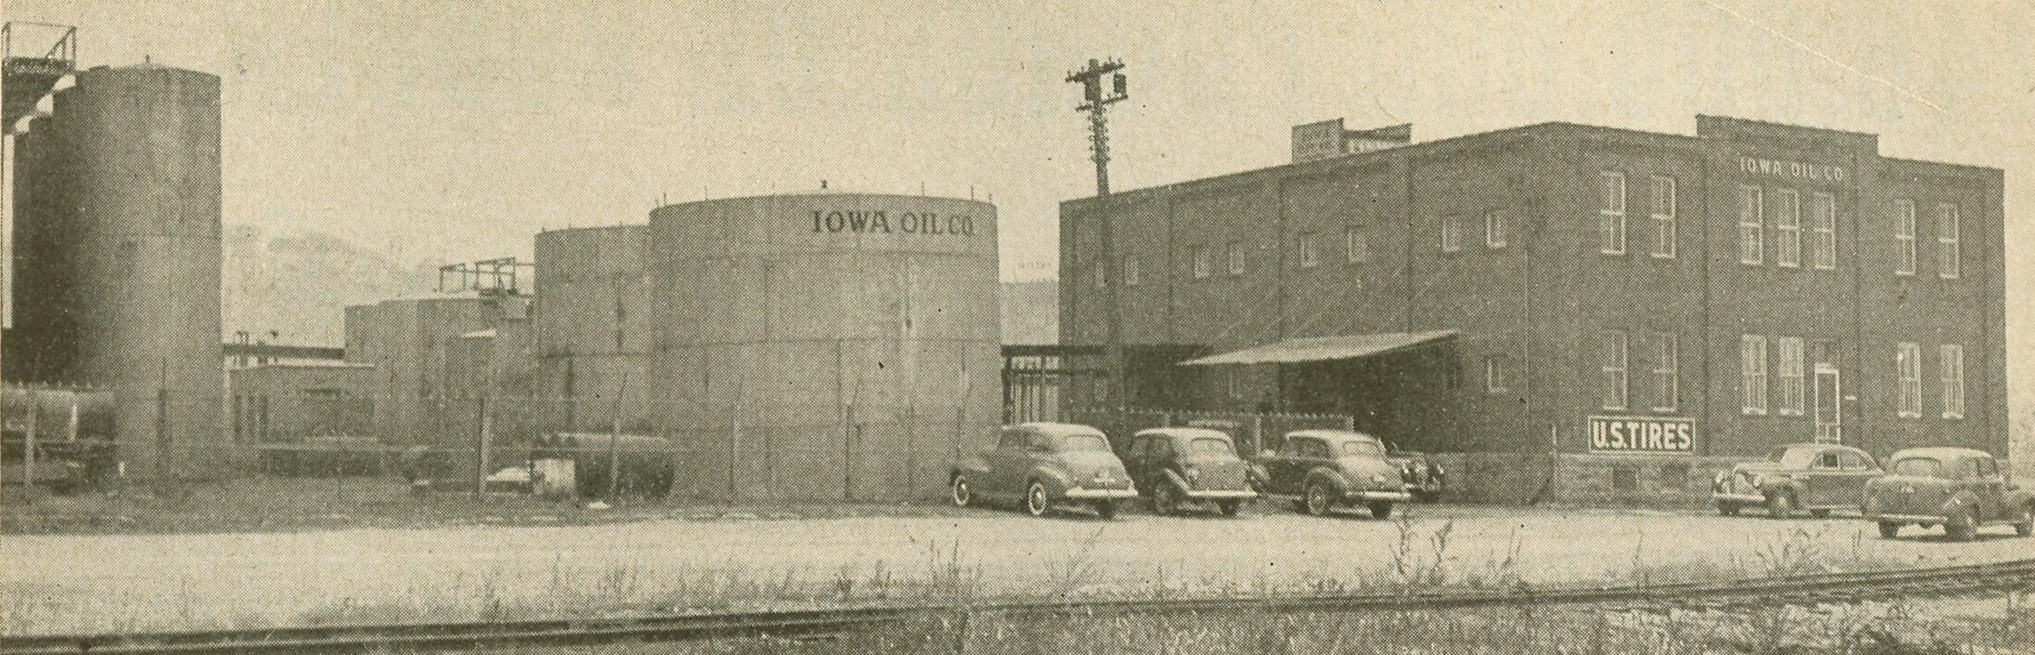 Iowa Oil Company Bulk Plant, Dubuque, Iowa